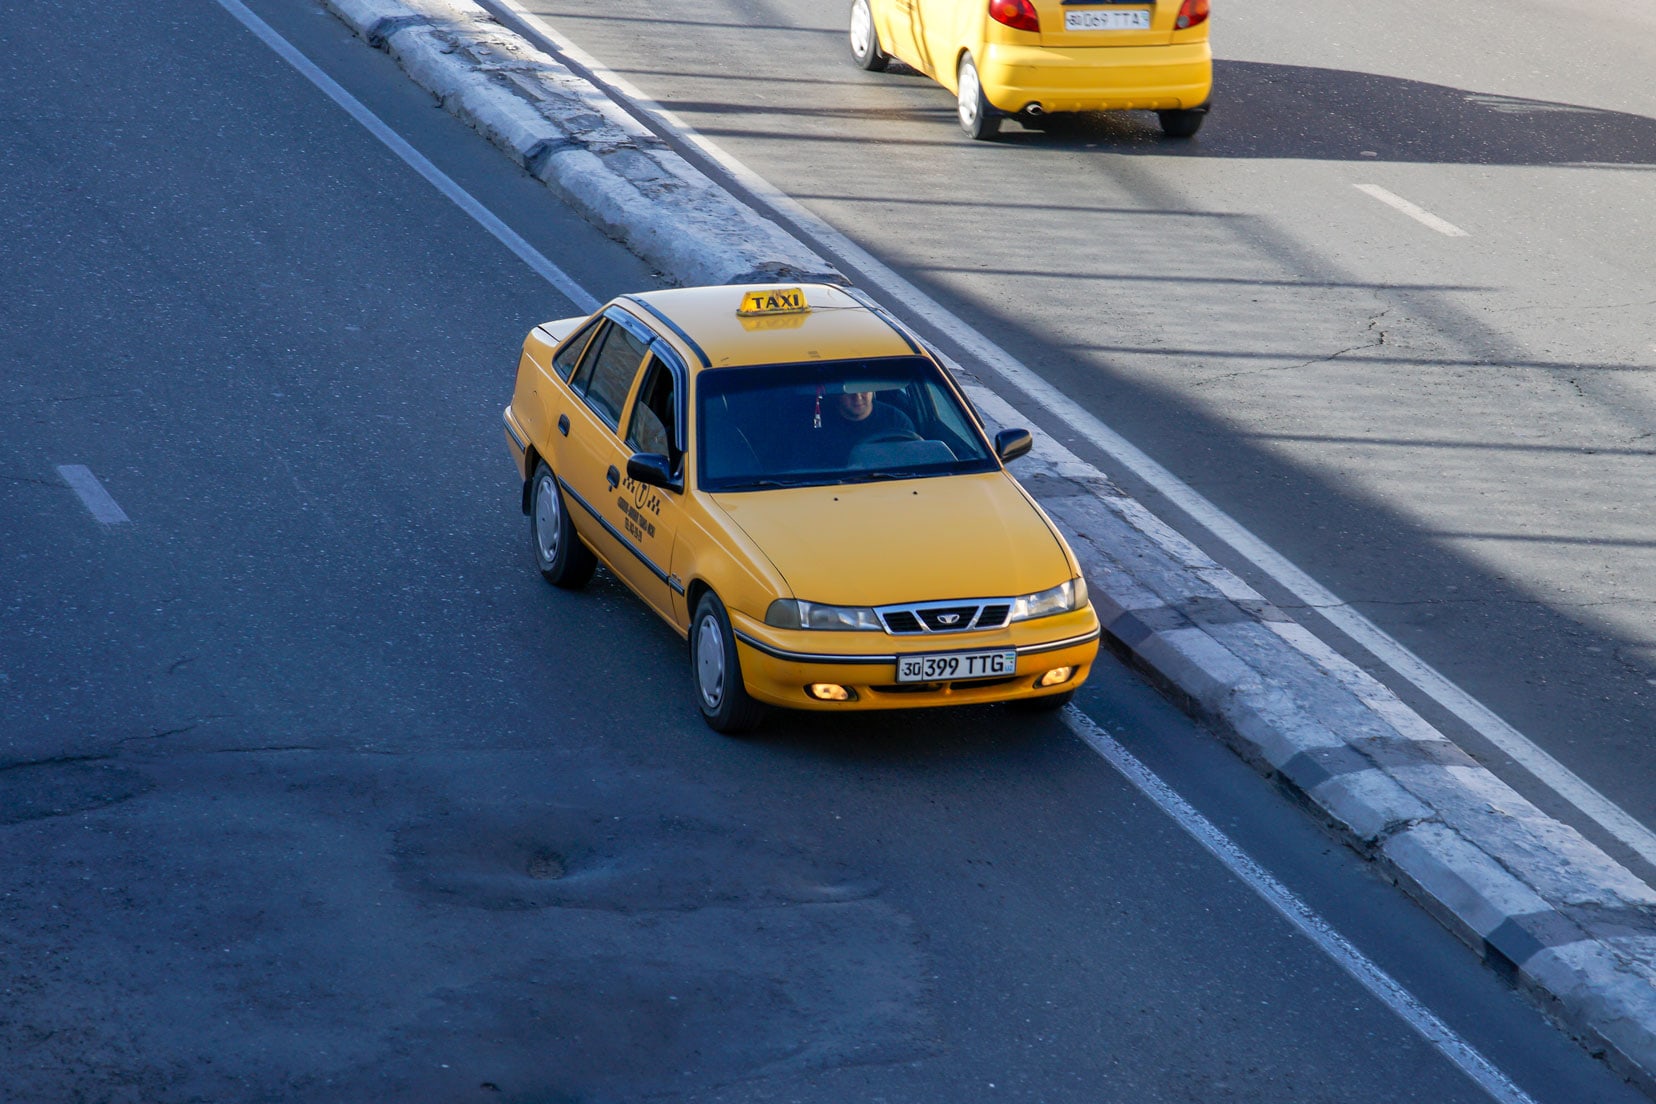 Uzbek_yellow-taxi-on-road